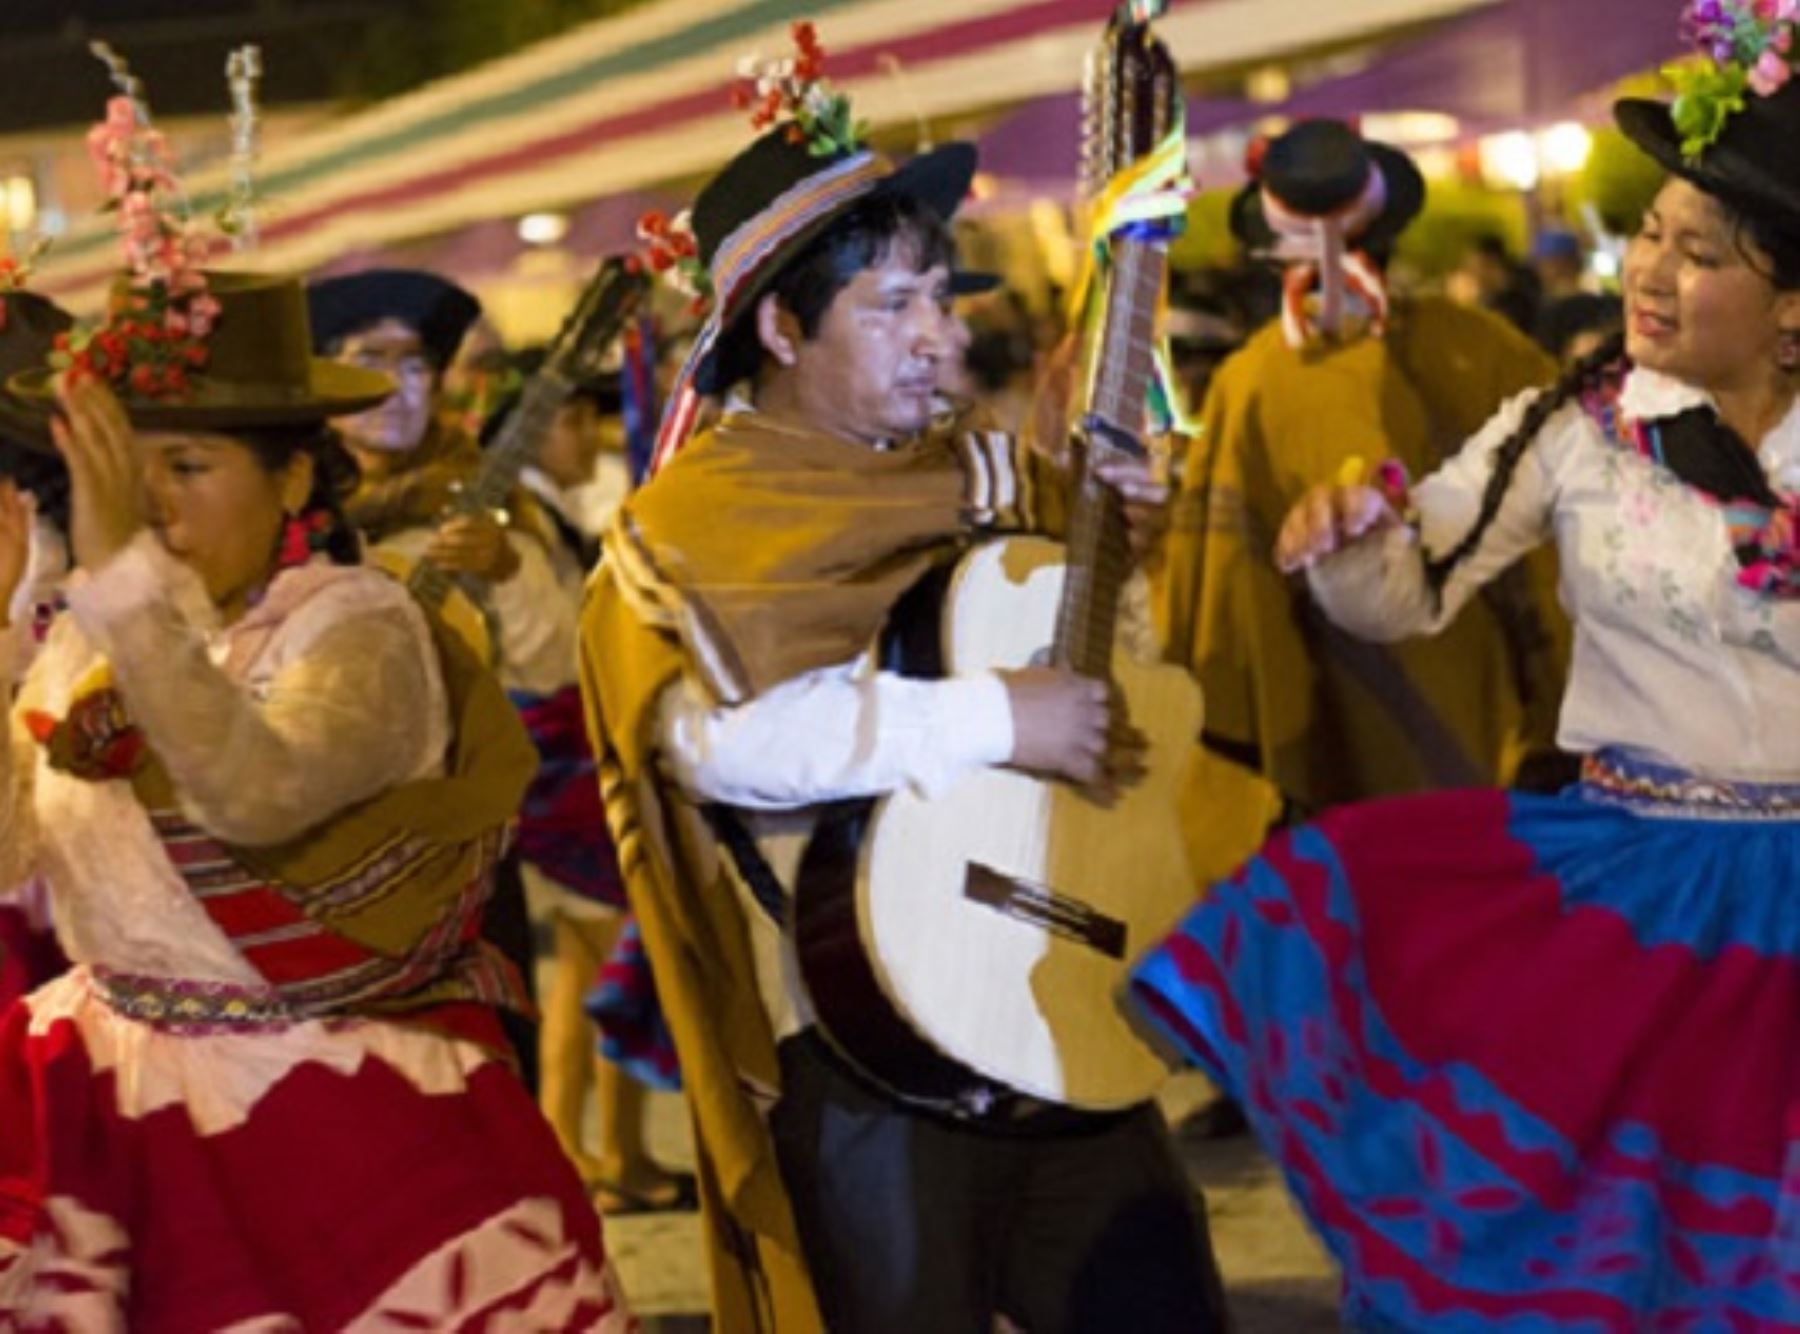 La danza ritual Pum pin fajardino, que se practica en la provincia de Víctor Fajardo, región Ayacucho, es reconocida como Patrimonio Cultural de la Nación por el Ministerio de Cultura. ANDINA/Difusión